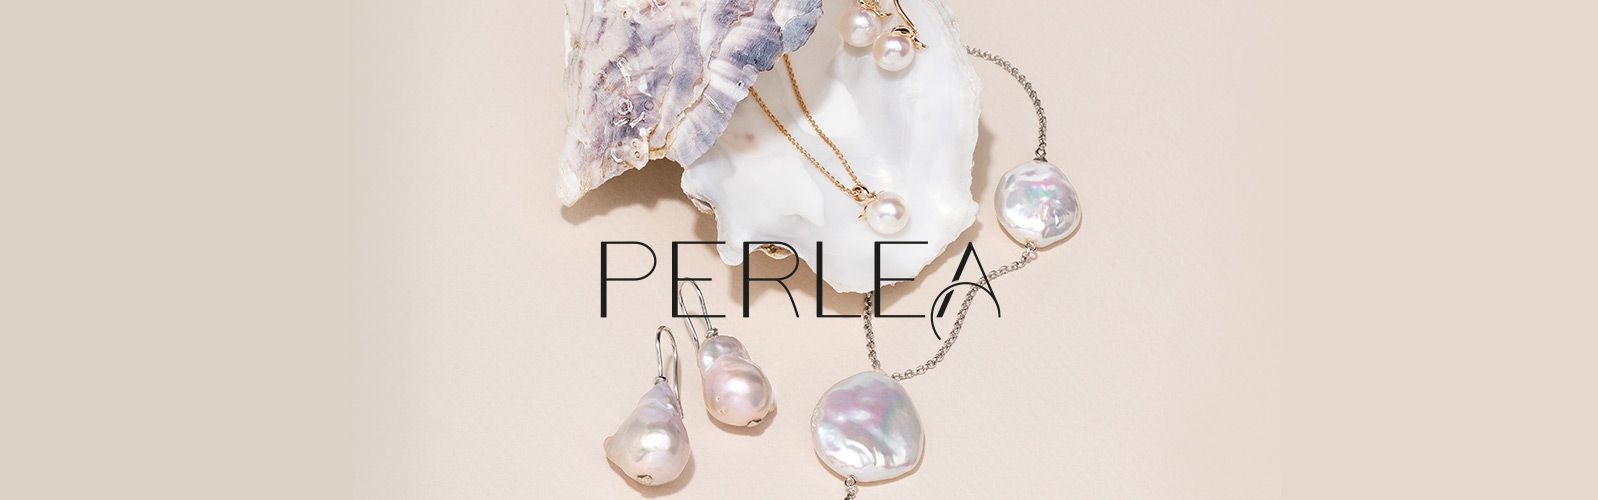 PERLEA Luxury Pearls